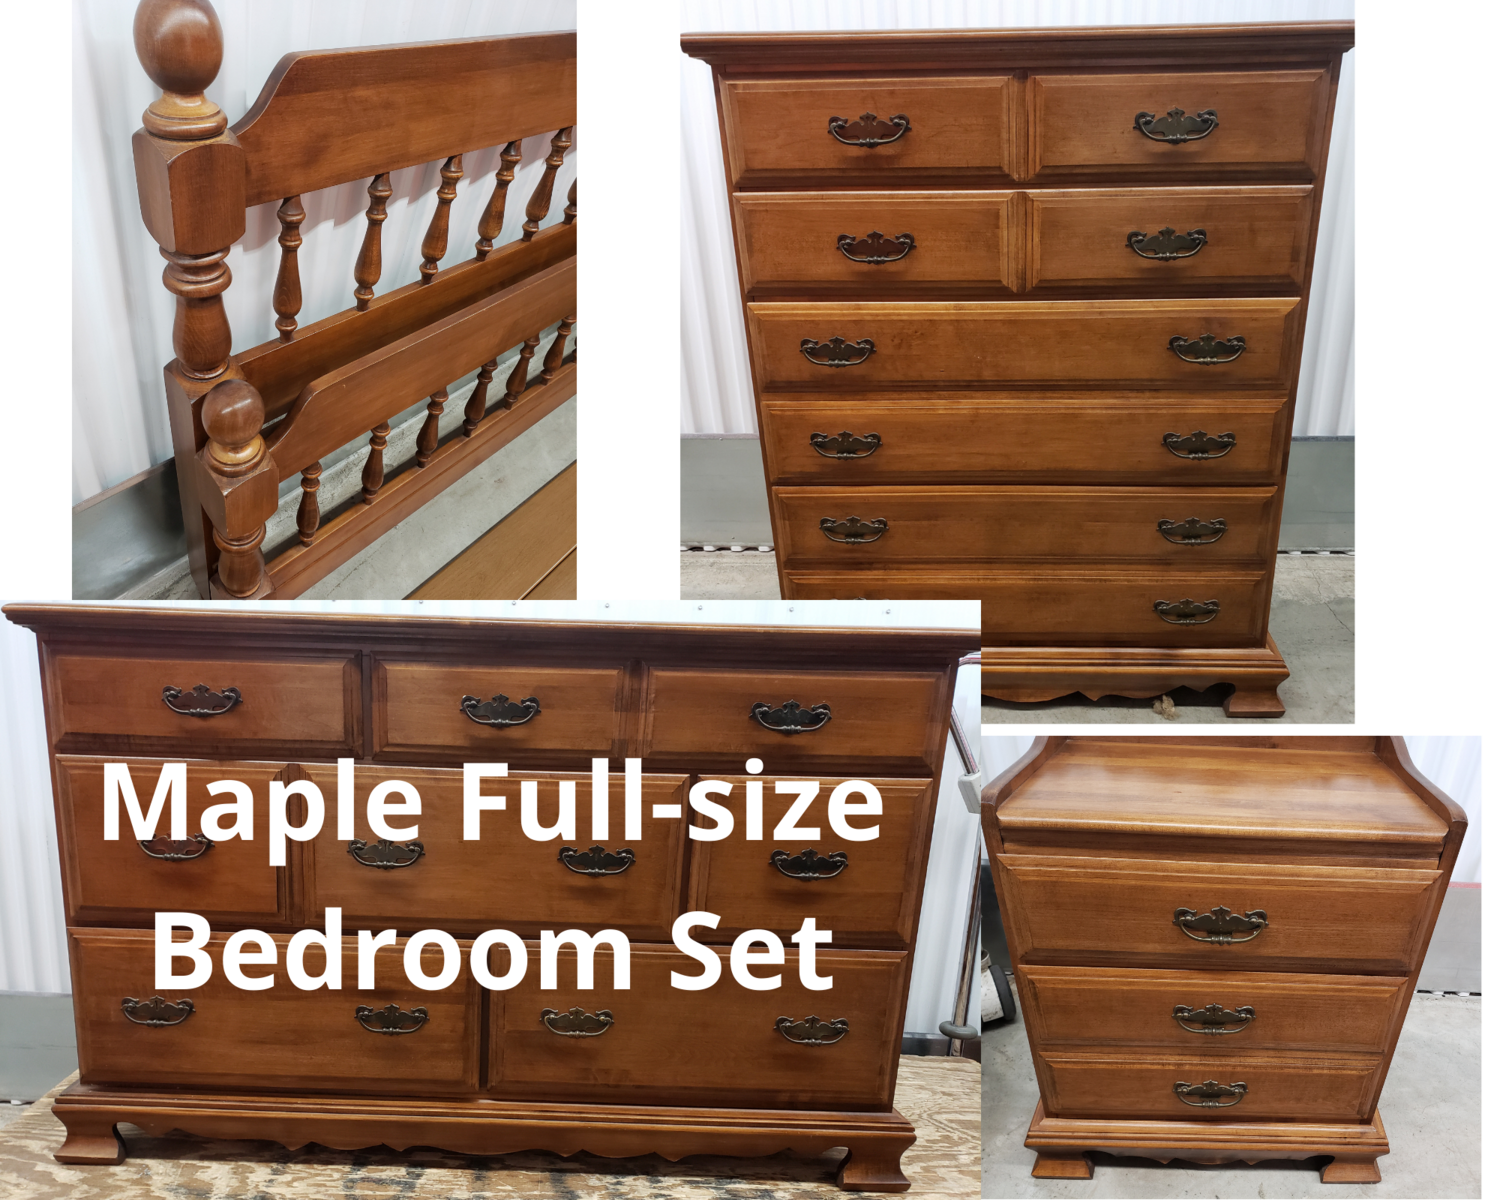 Full-size Maple Bedroom Set #2349